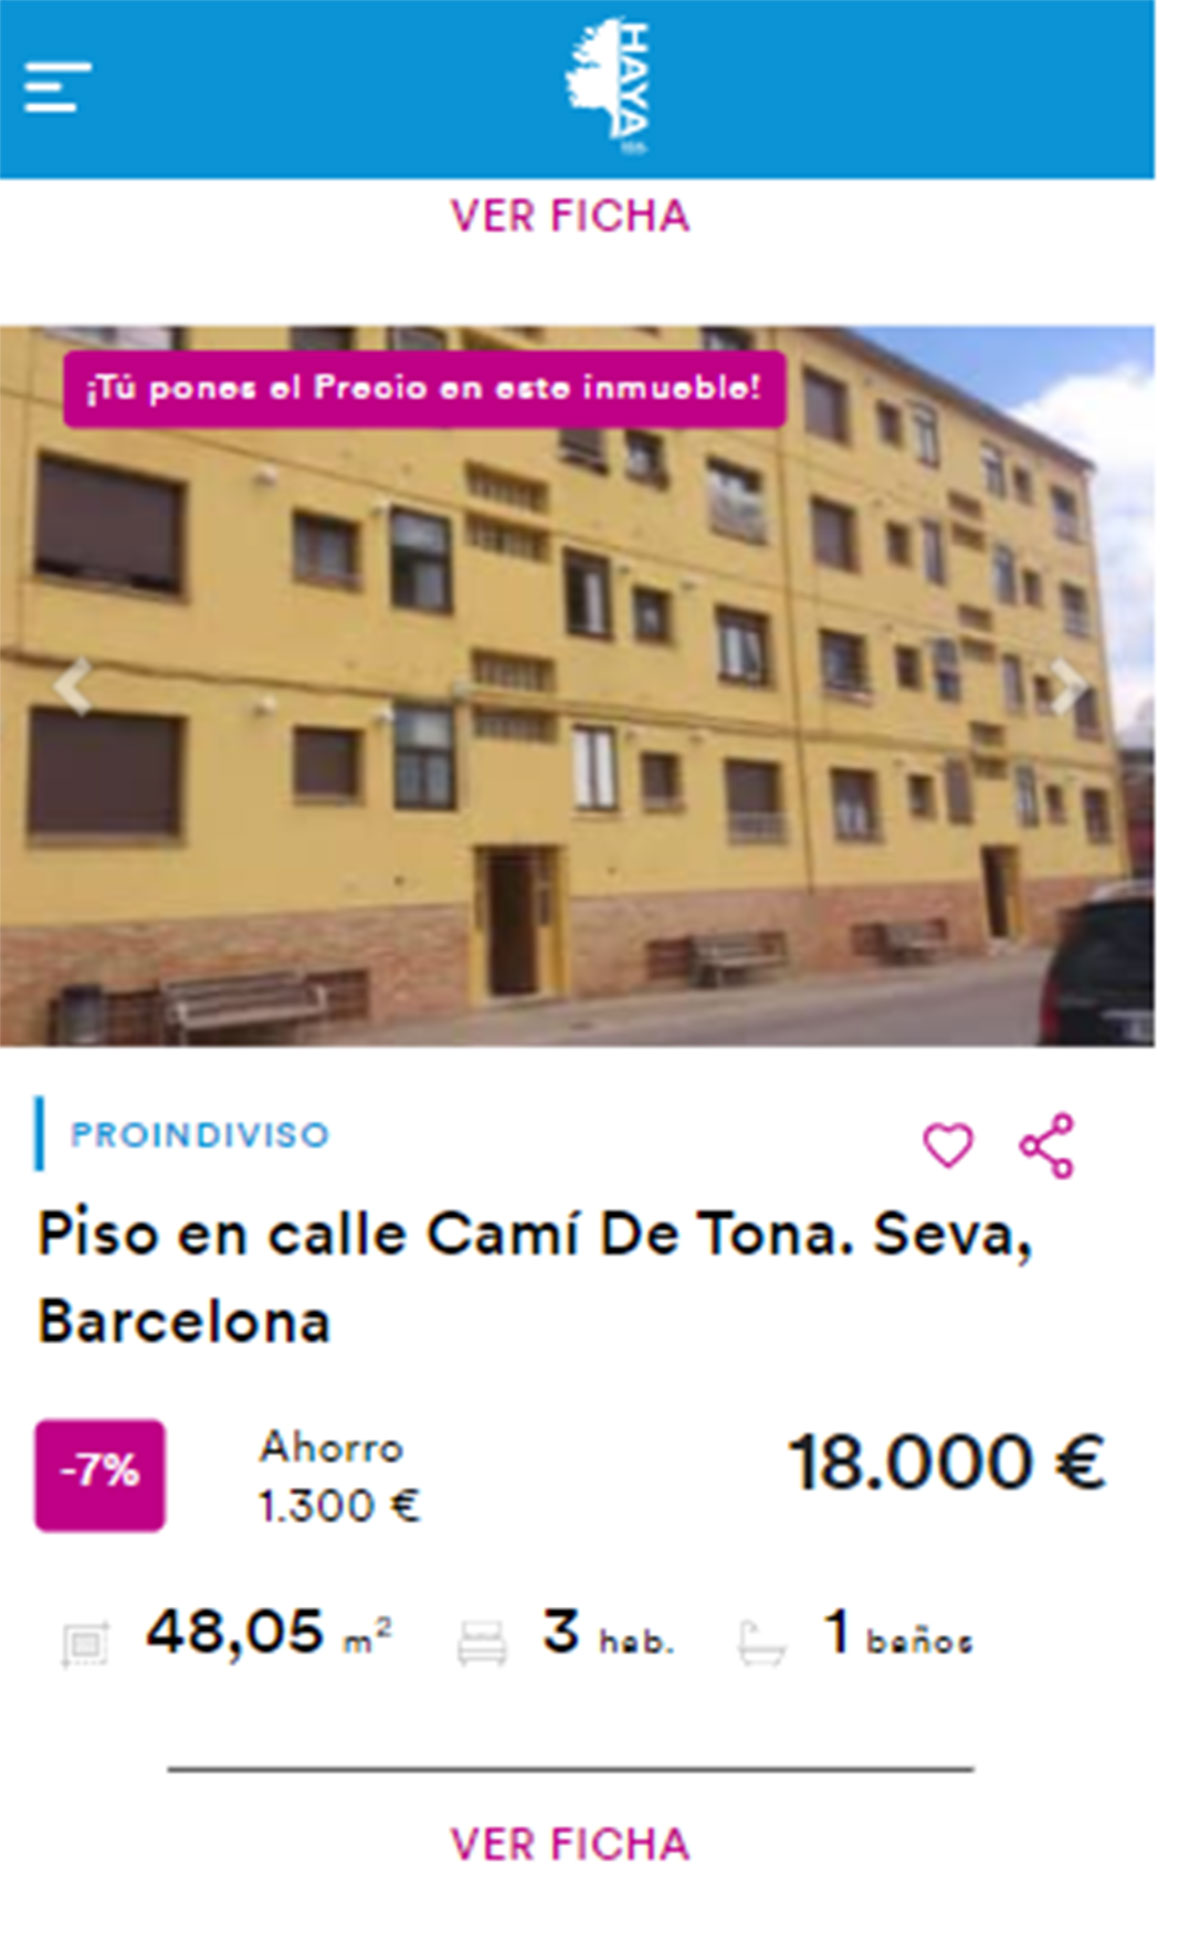 Piso en Barcelona por 18.000 euros